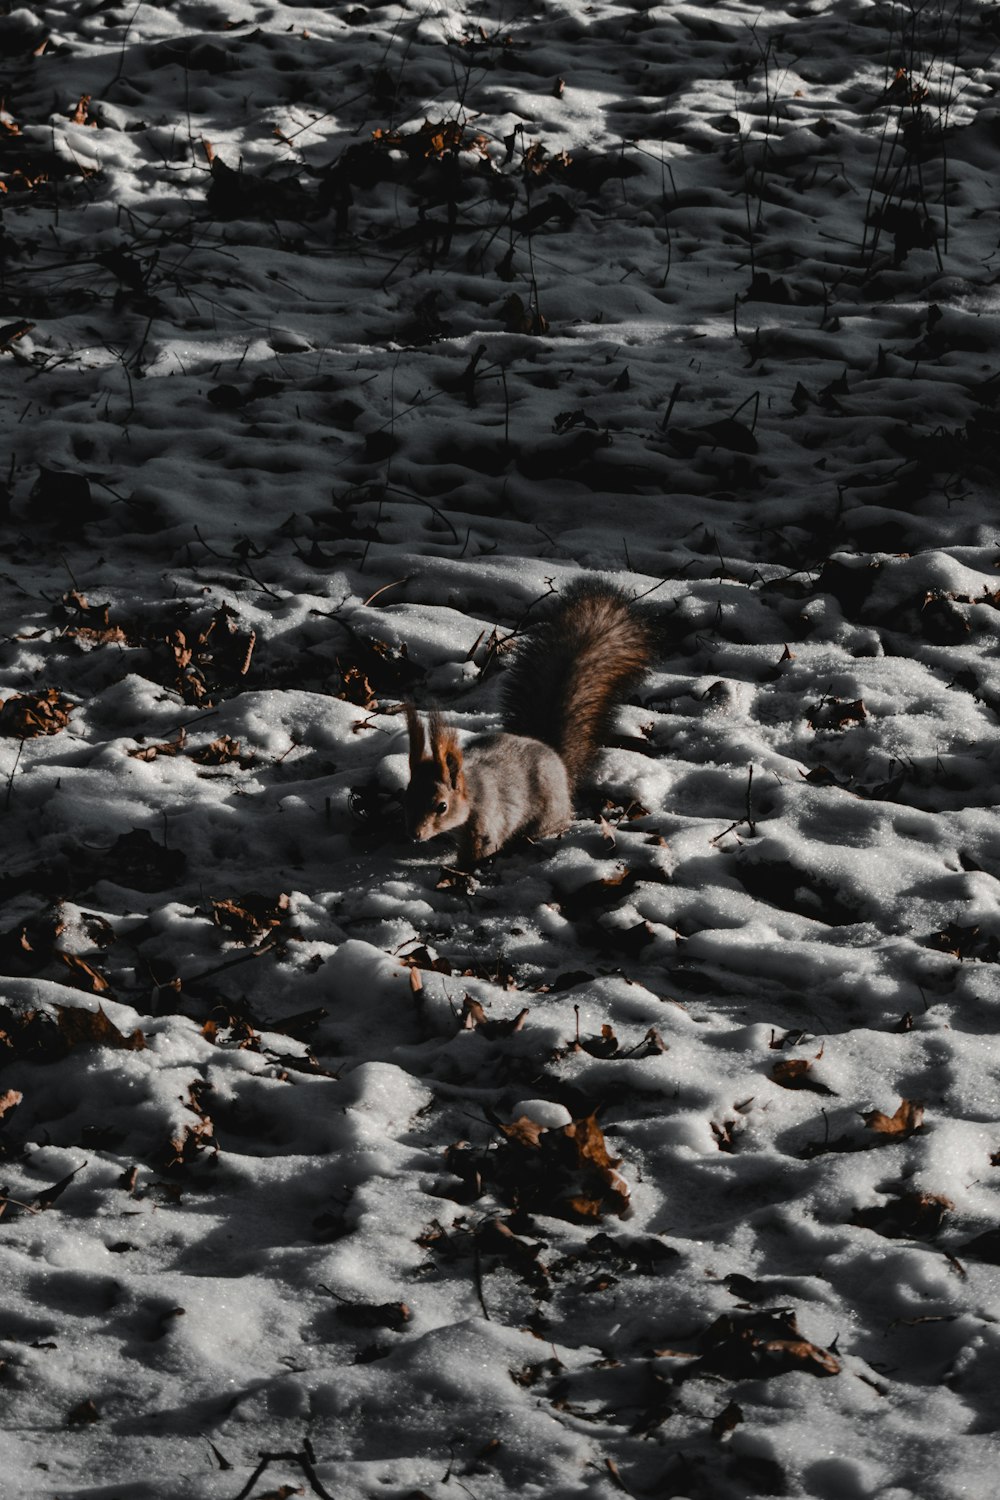 écureuil brun sur un sol enneigé pendant la journée